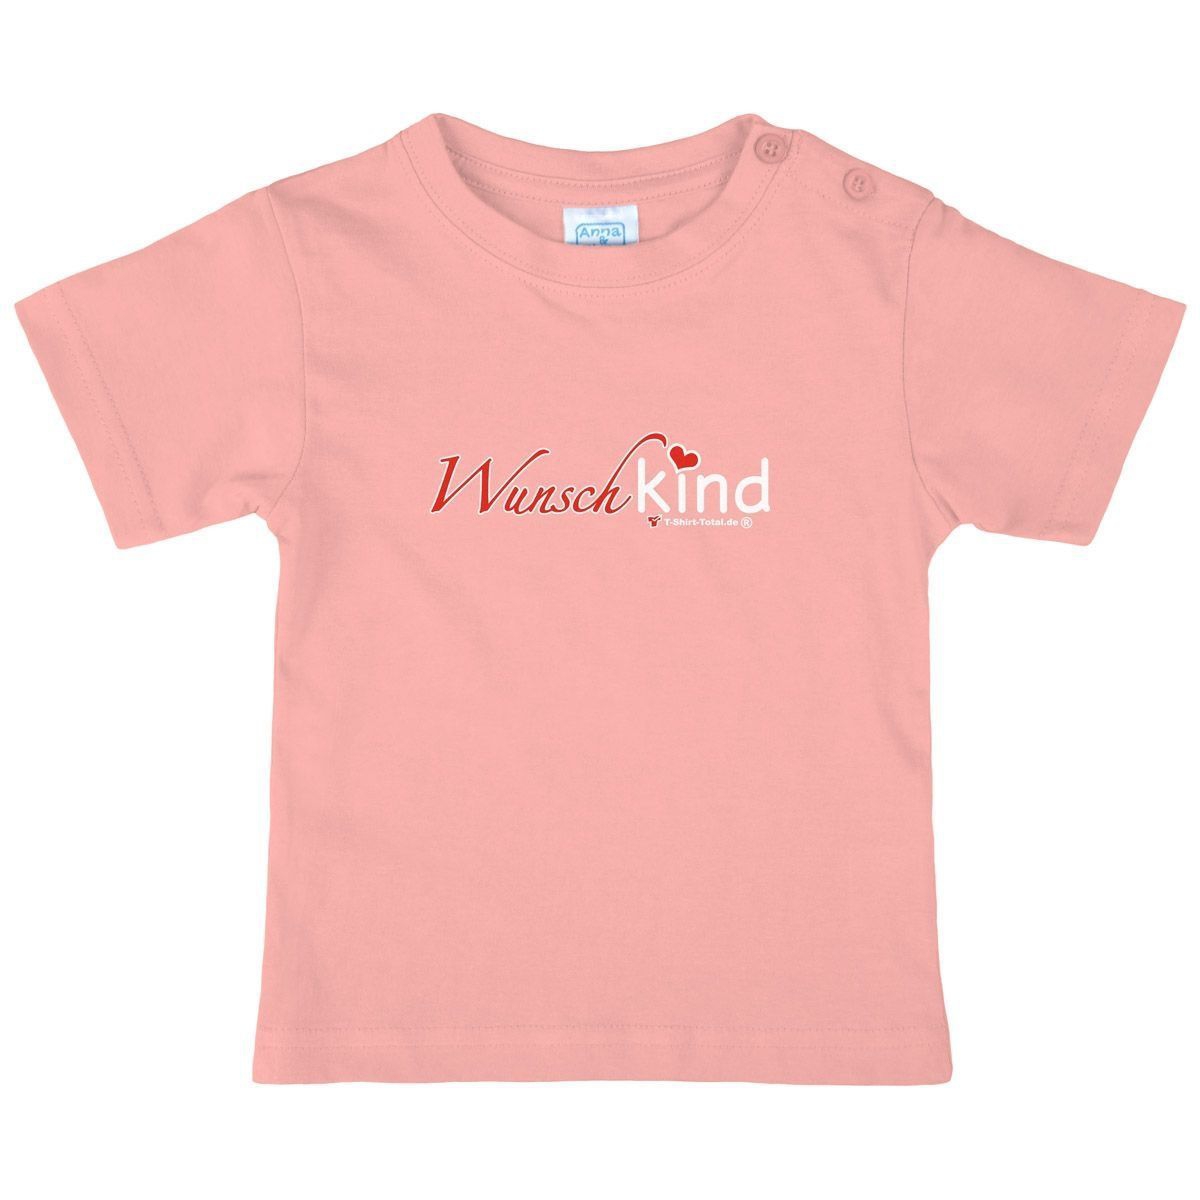 Wunschkind Kinder T-Shirt rosa 56 / 62